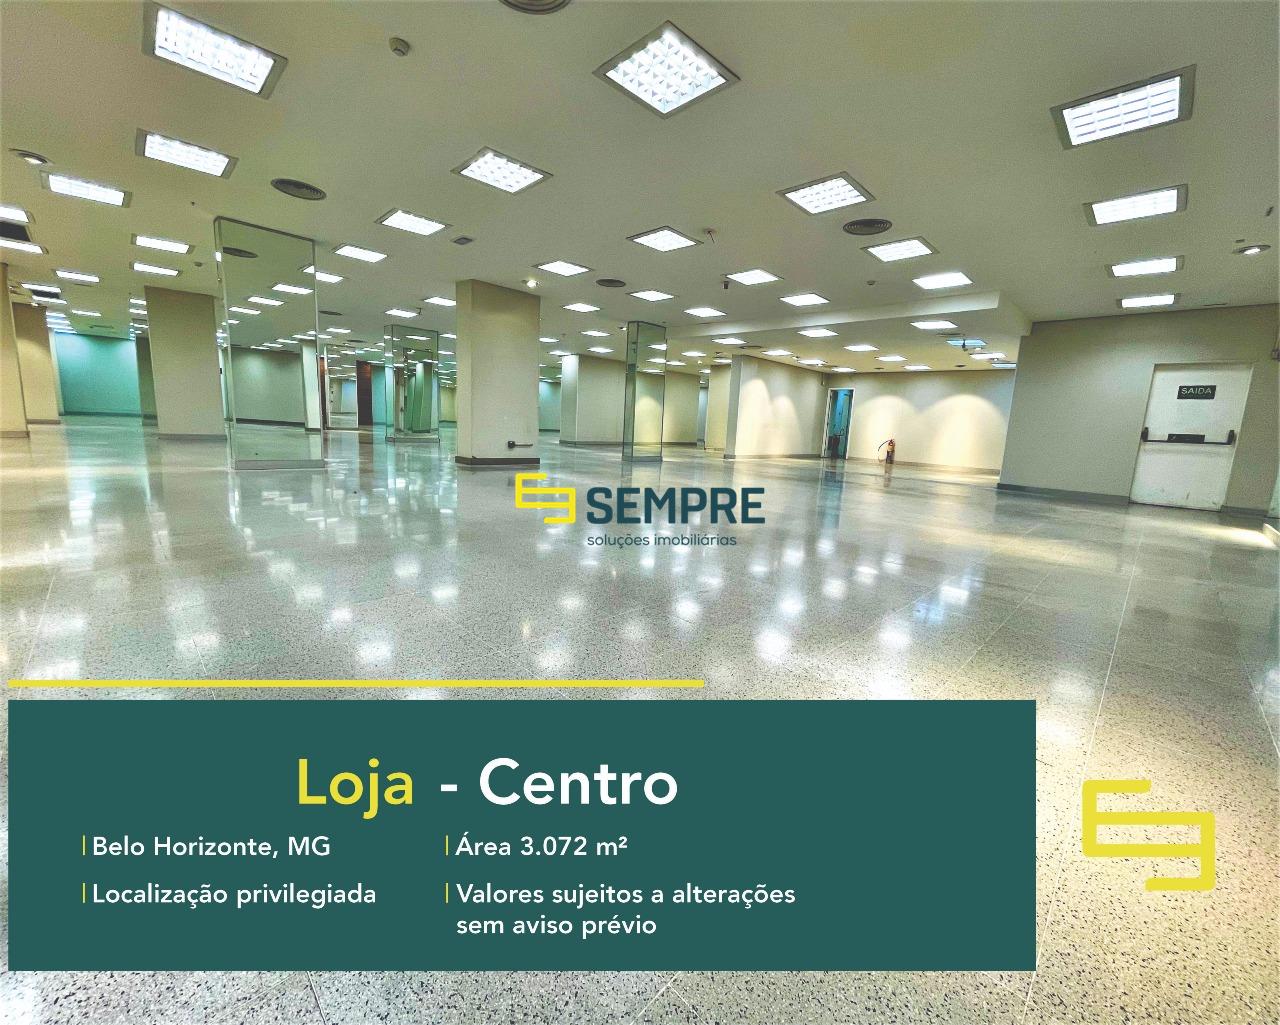 Ponto comercial para alugar no Centro de Belo Horizonte, excelente localização. O estabelecimento comercial conta com área de 3.072 m².